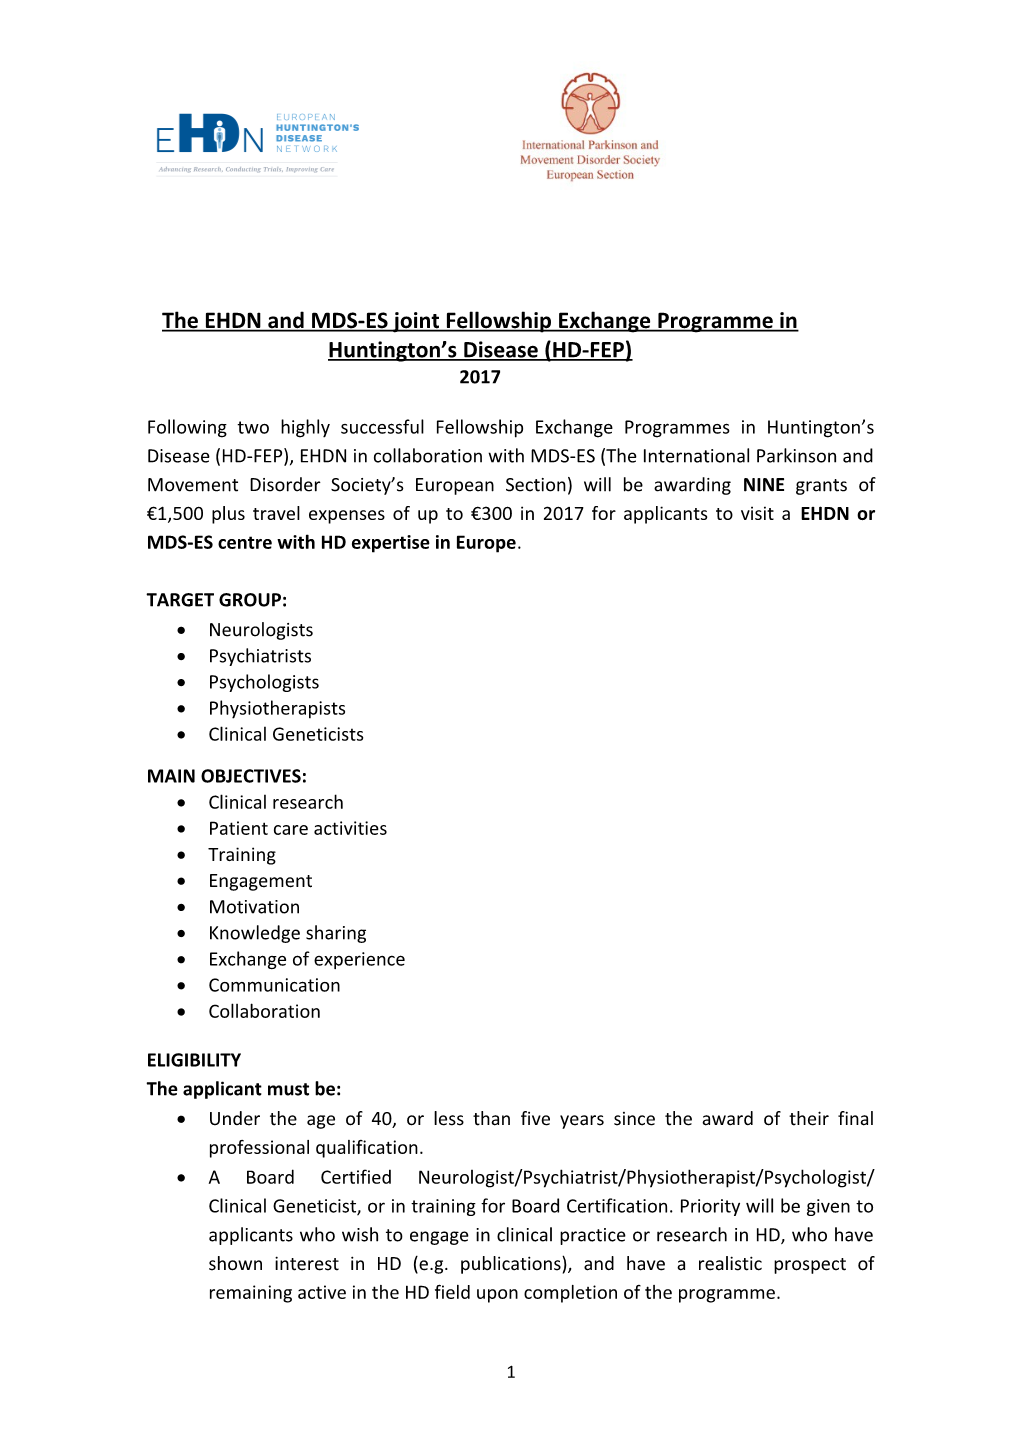 The EHDN Fellowship Exchange Programme (EHDN-FEP)